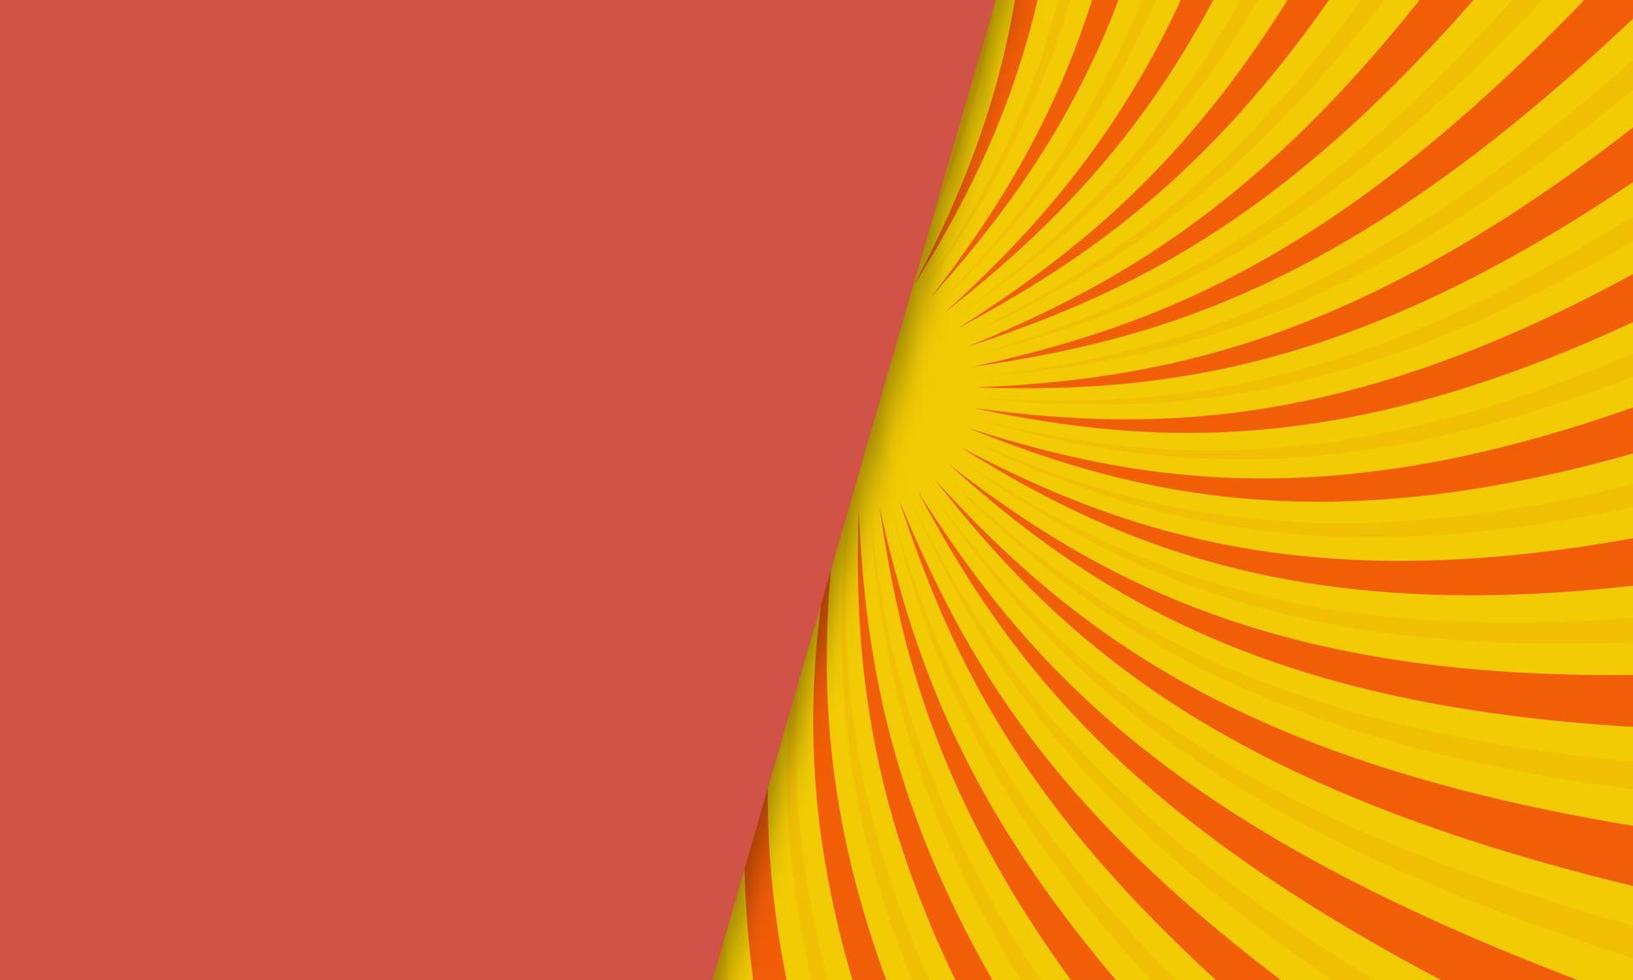 Fondo de fondo de estilo superpuesto de vector abstracto amarillo naranja rojo con rayos. ilustración vectorial grunge retro con un fondo de círculo blanco. diseño abstracto de rayos de sol. sol naciente de la vendimia